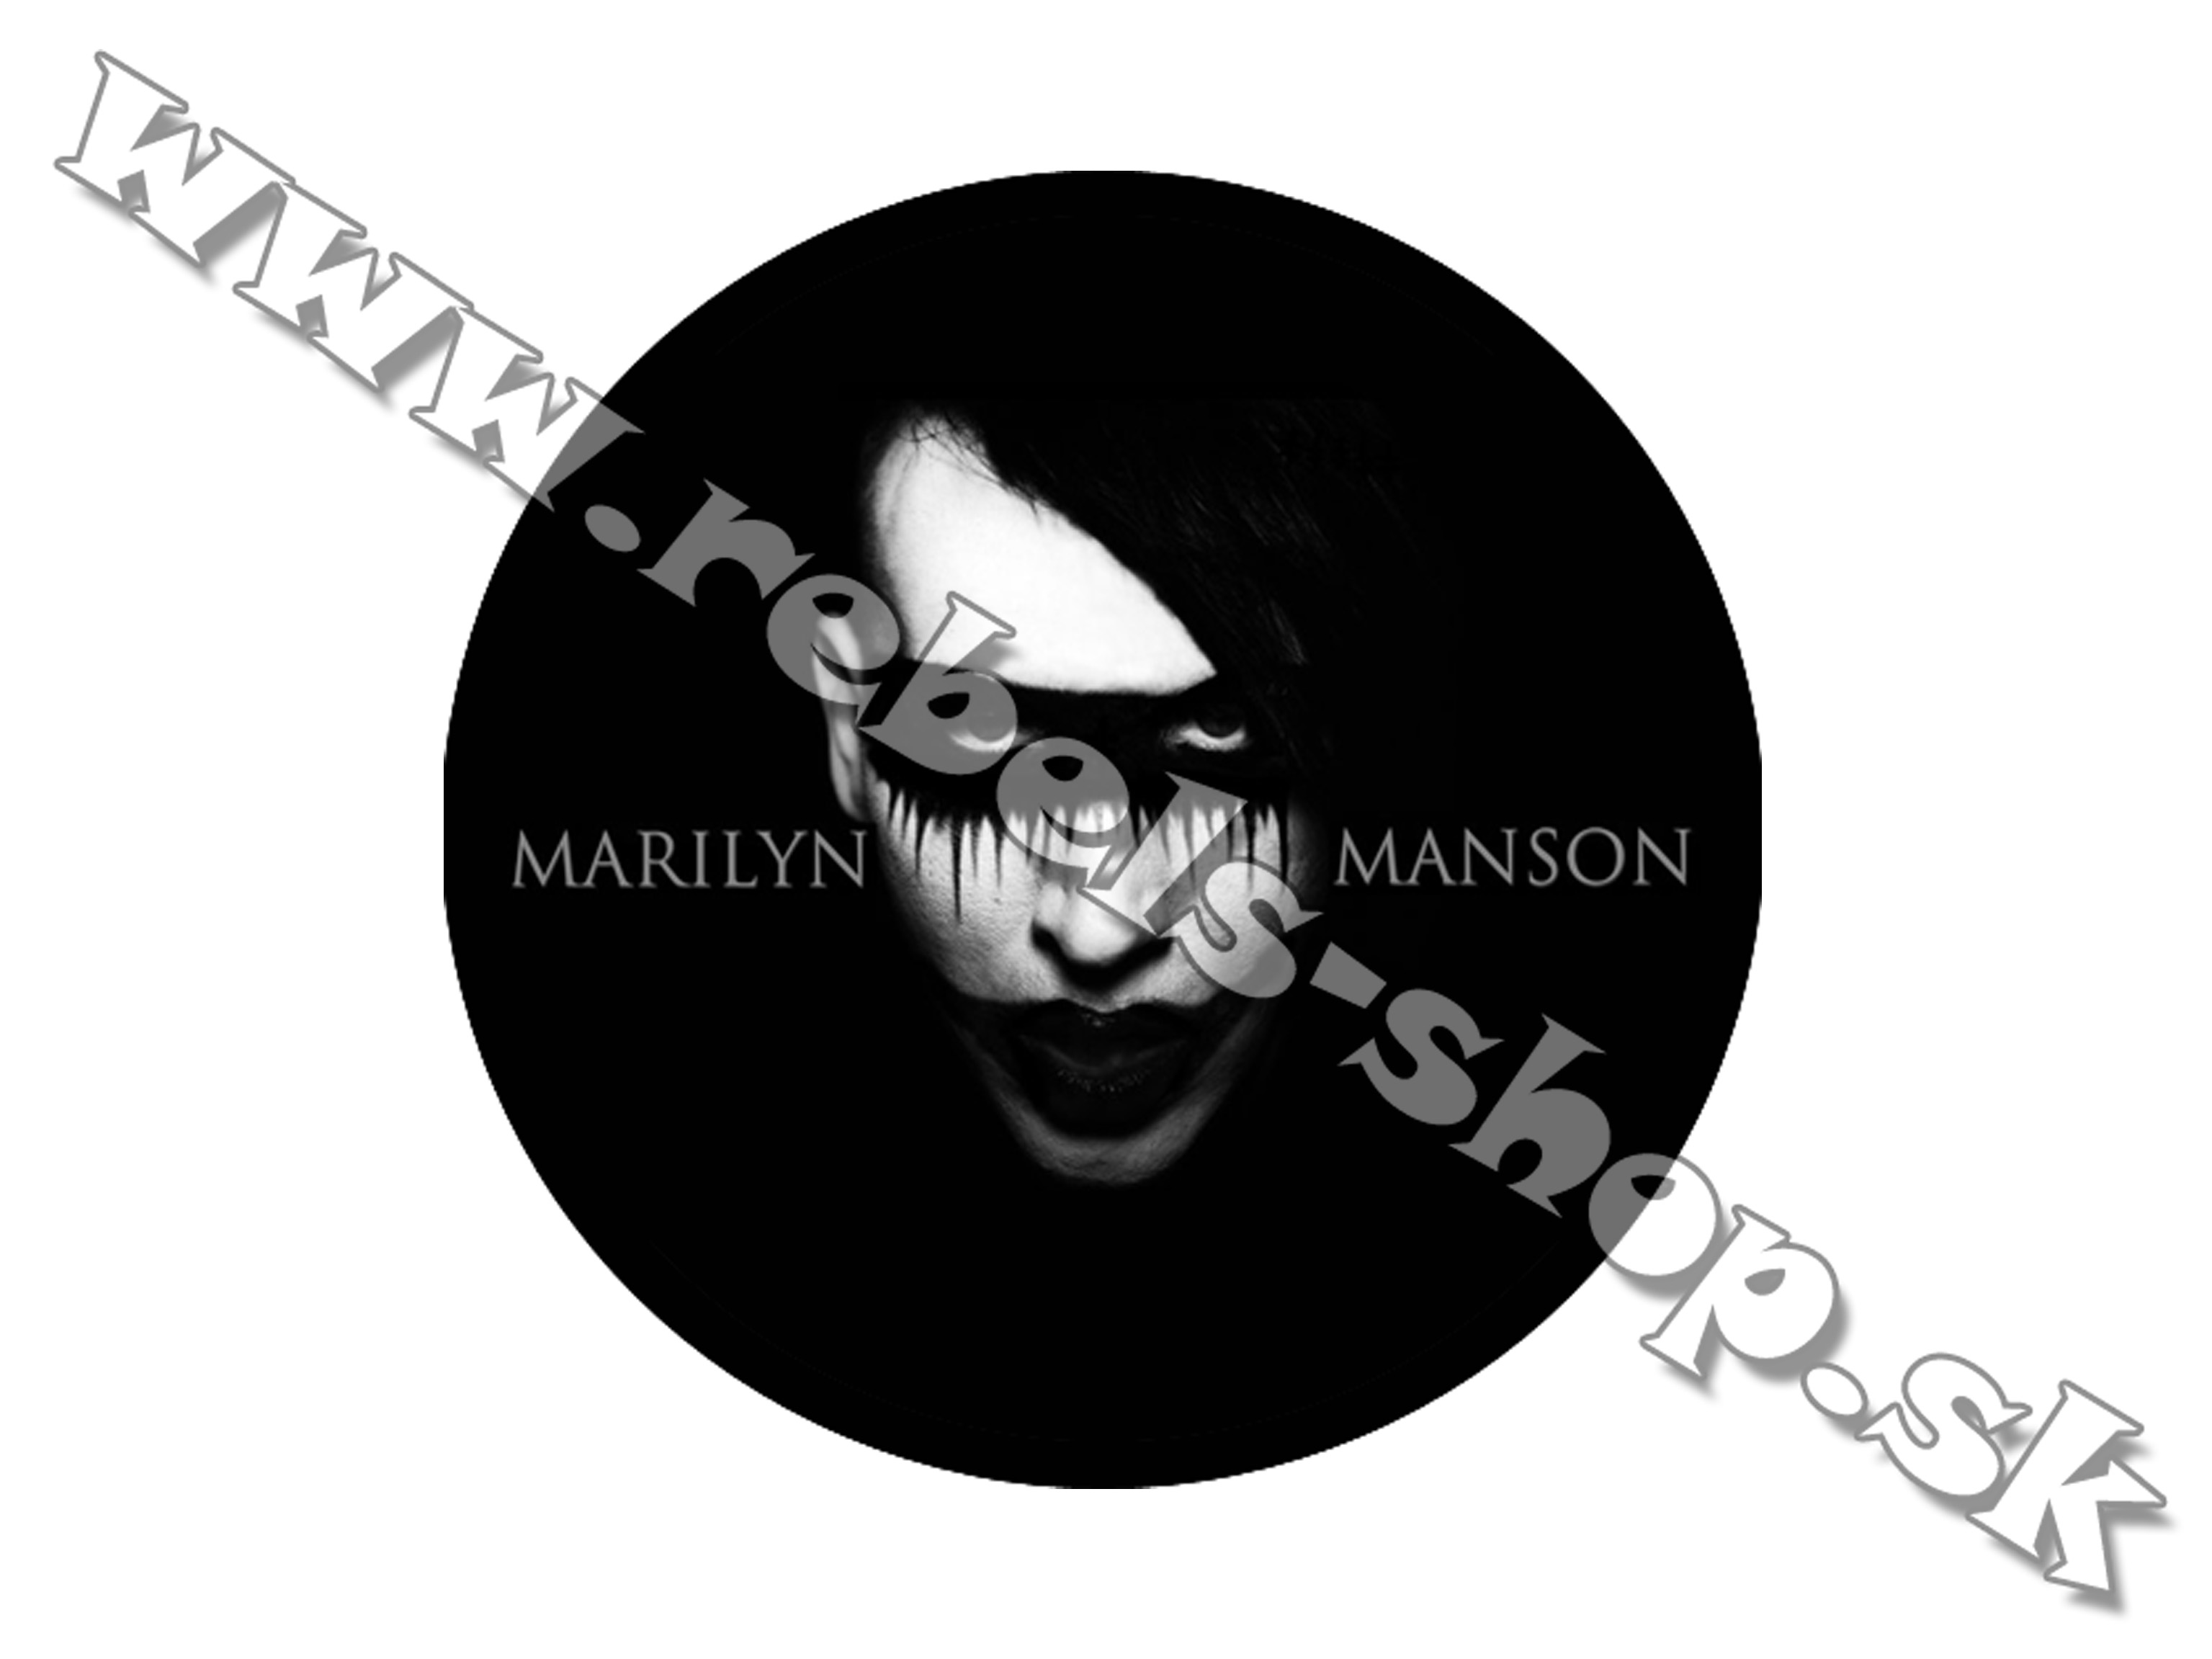 Odznak "Marilyn Manson"